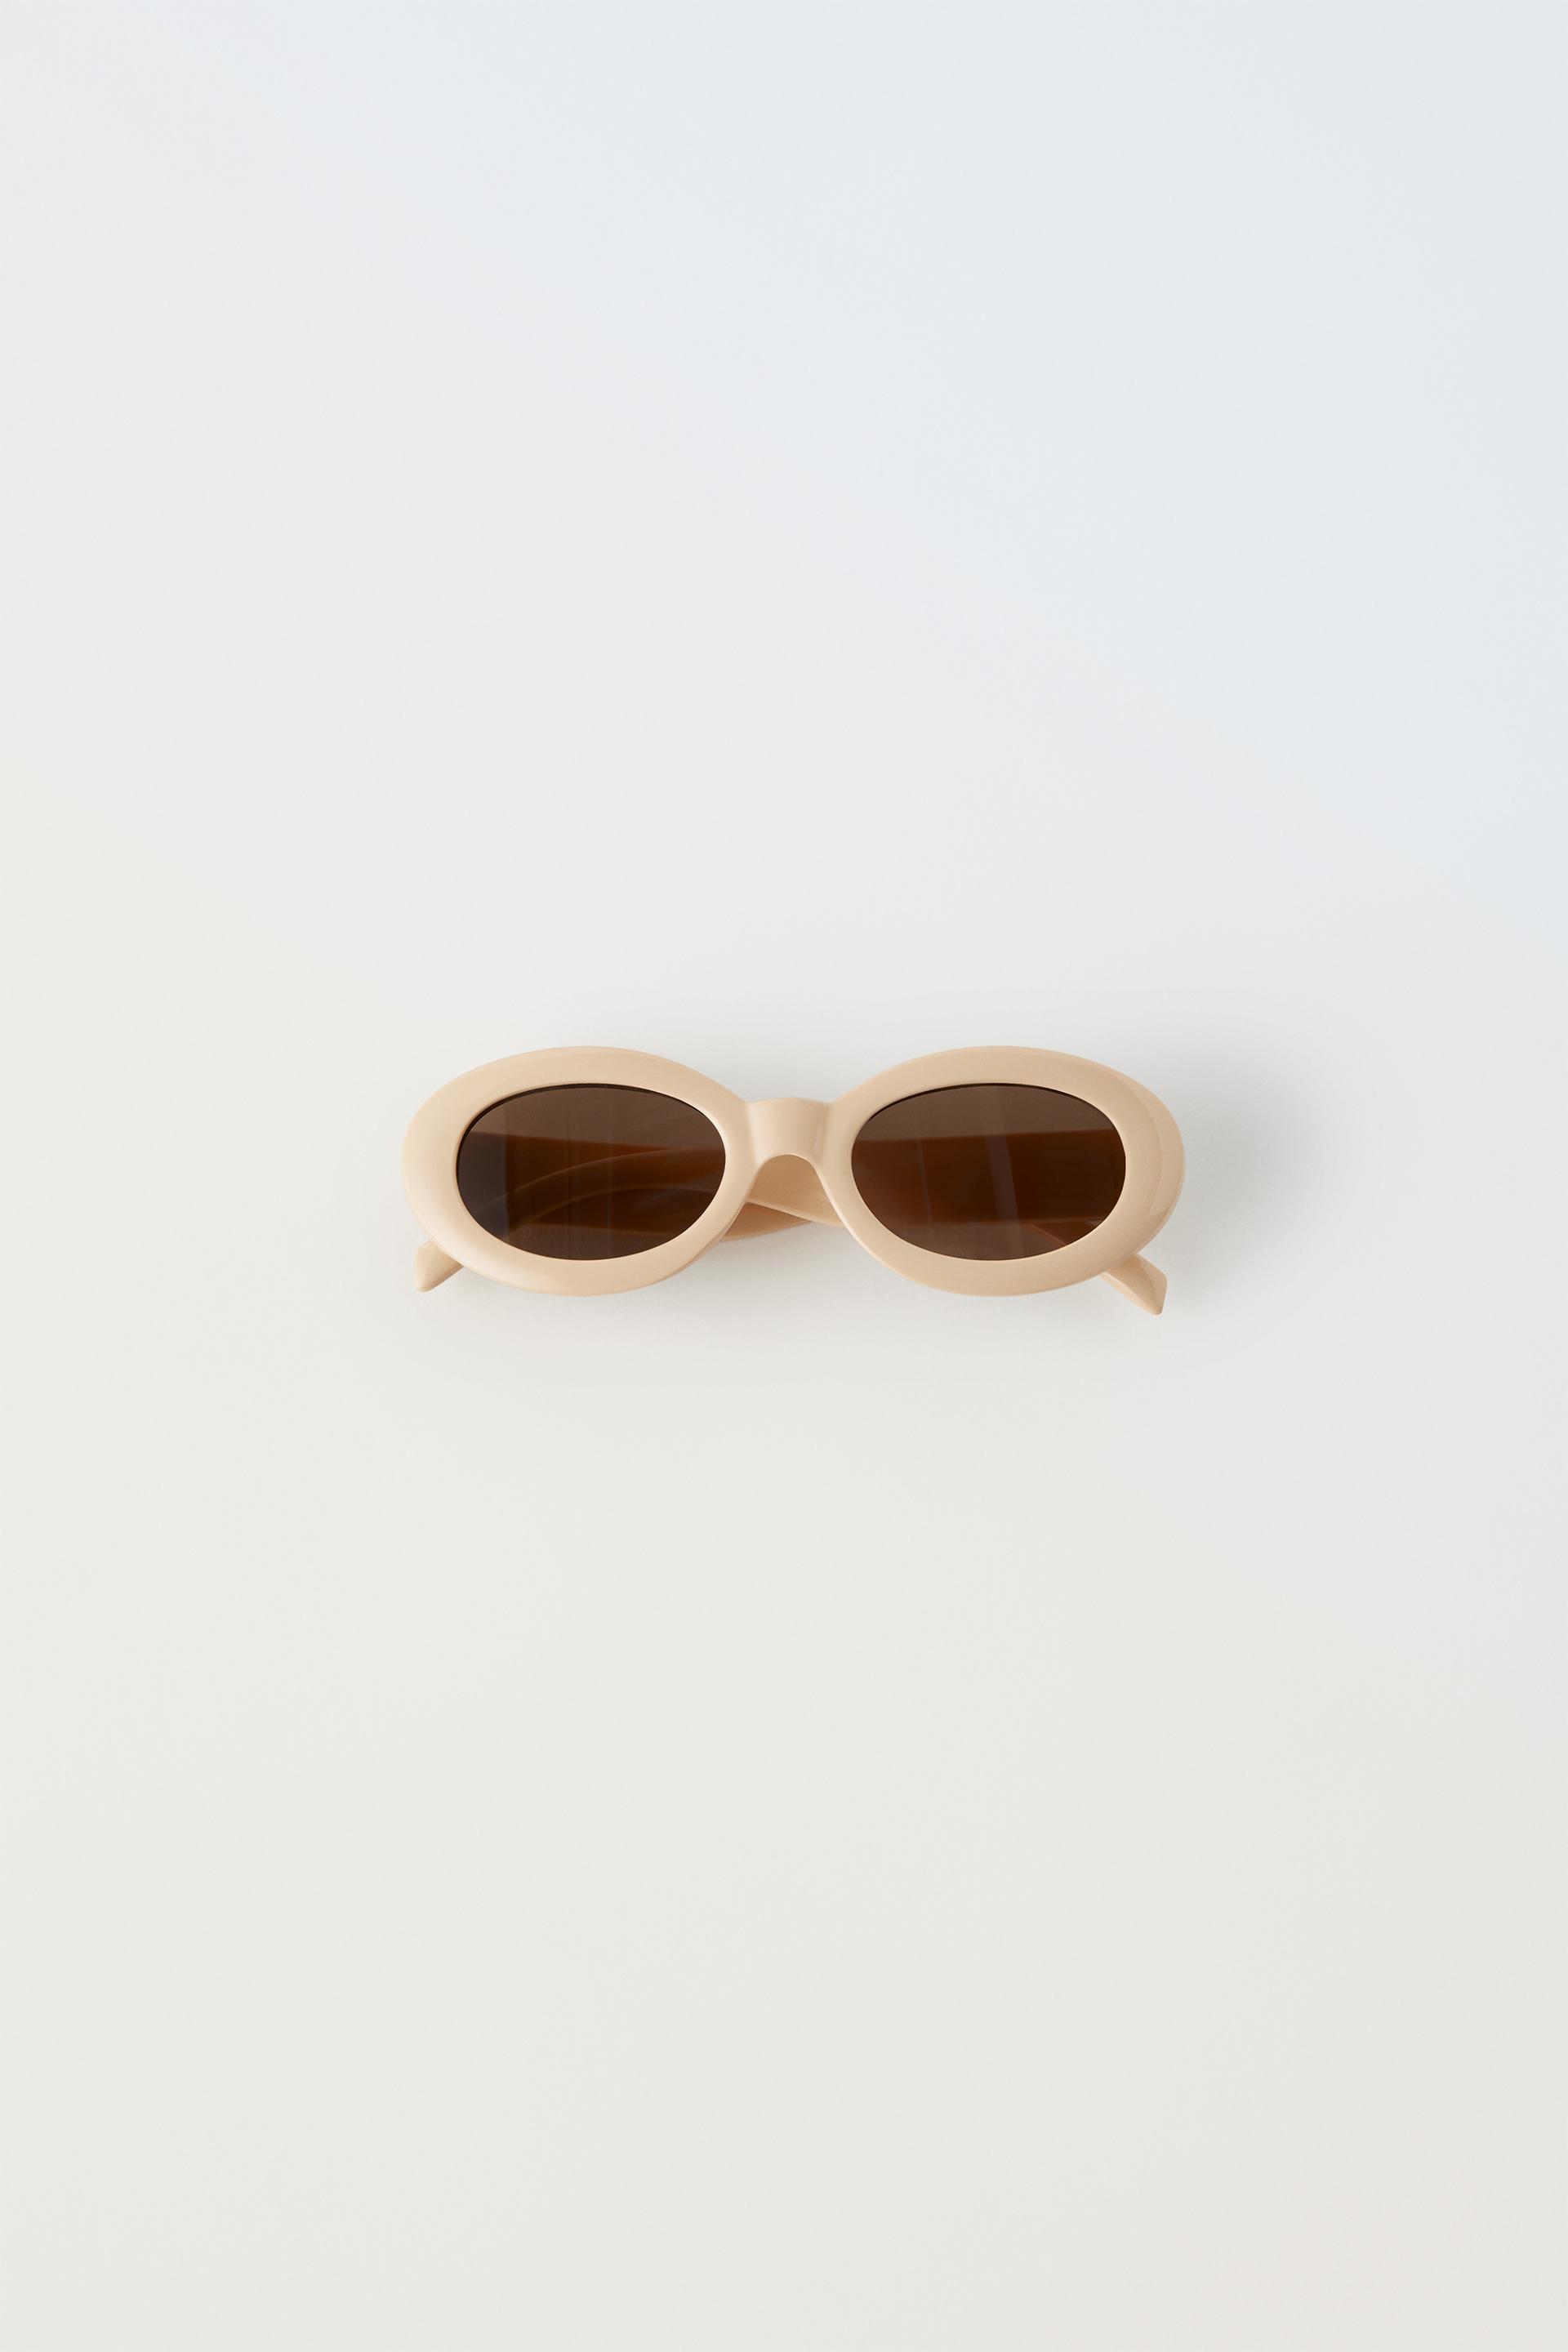 Детские солнцезащитные очки Zara Oval Resin Frame, кремовый